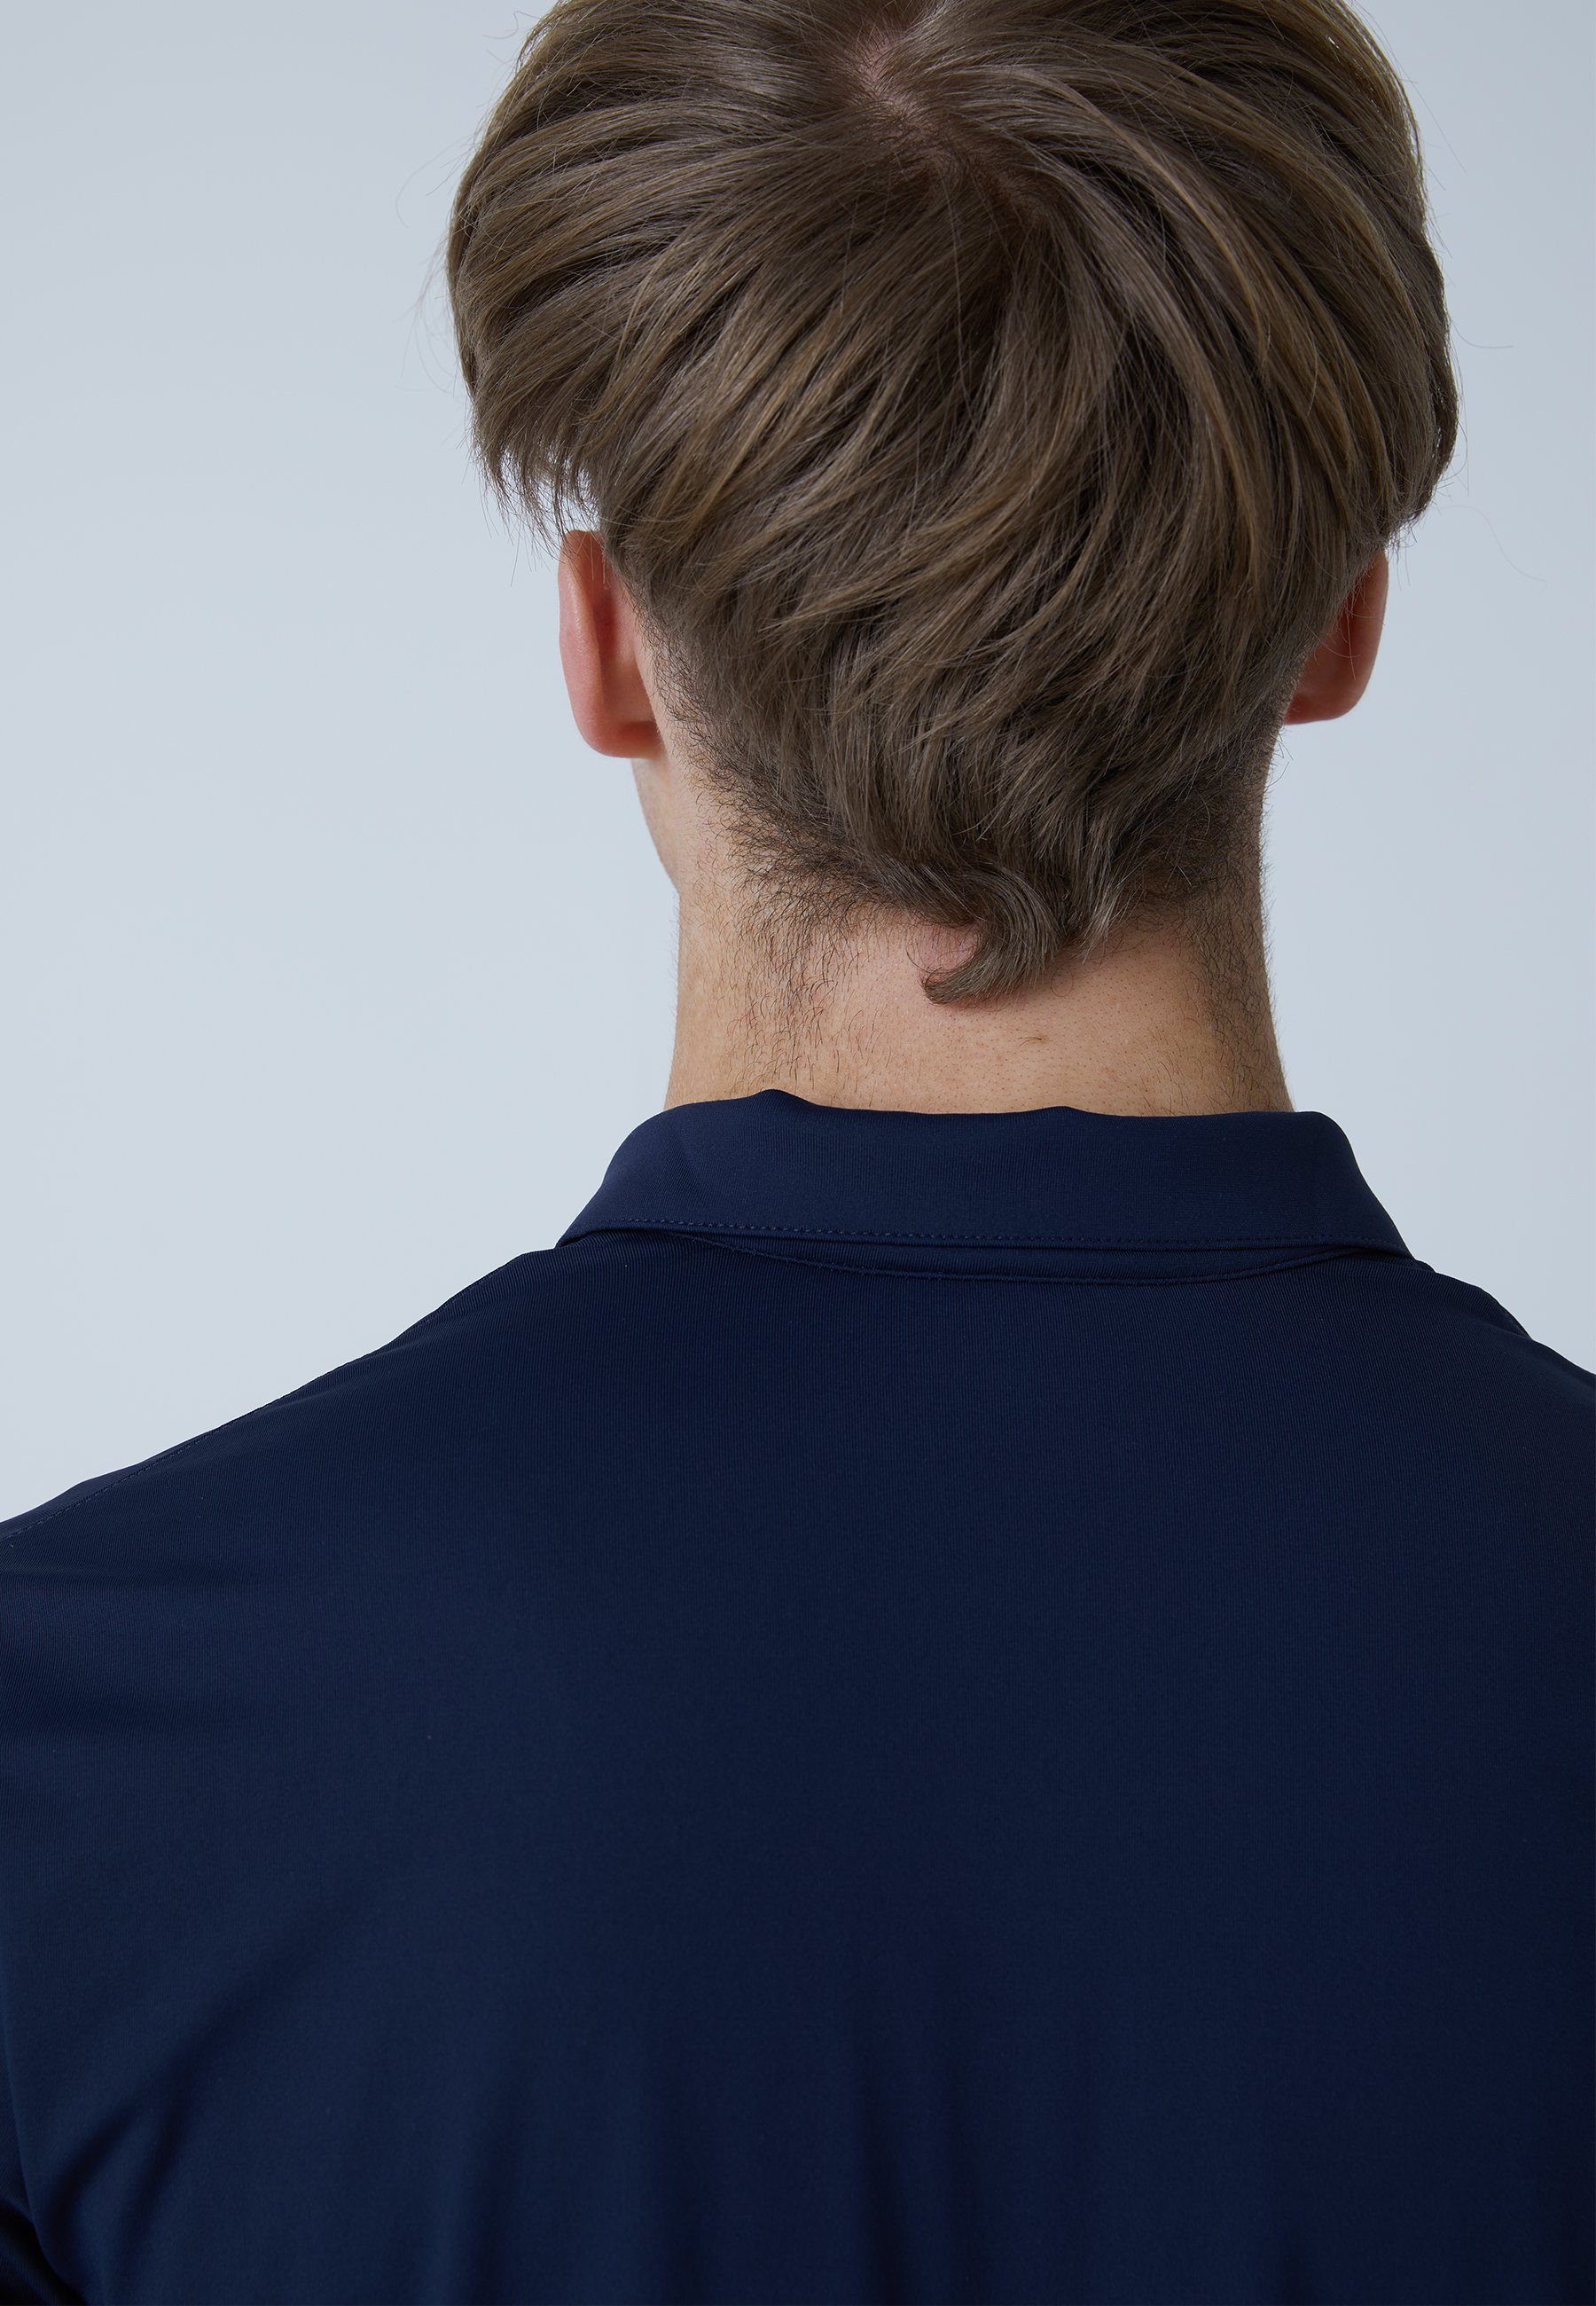 Polo navy Herren SPORTKIND Shirt & Funktionsshirt Kurzarm blau Golf Jungen